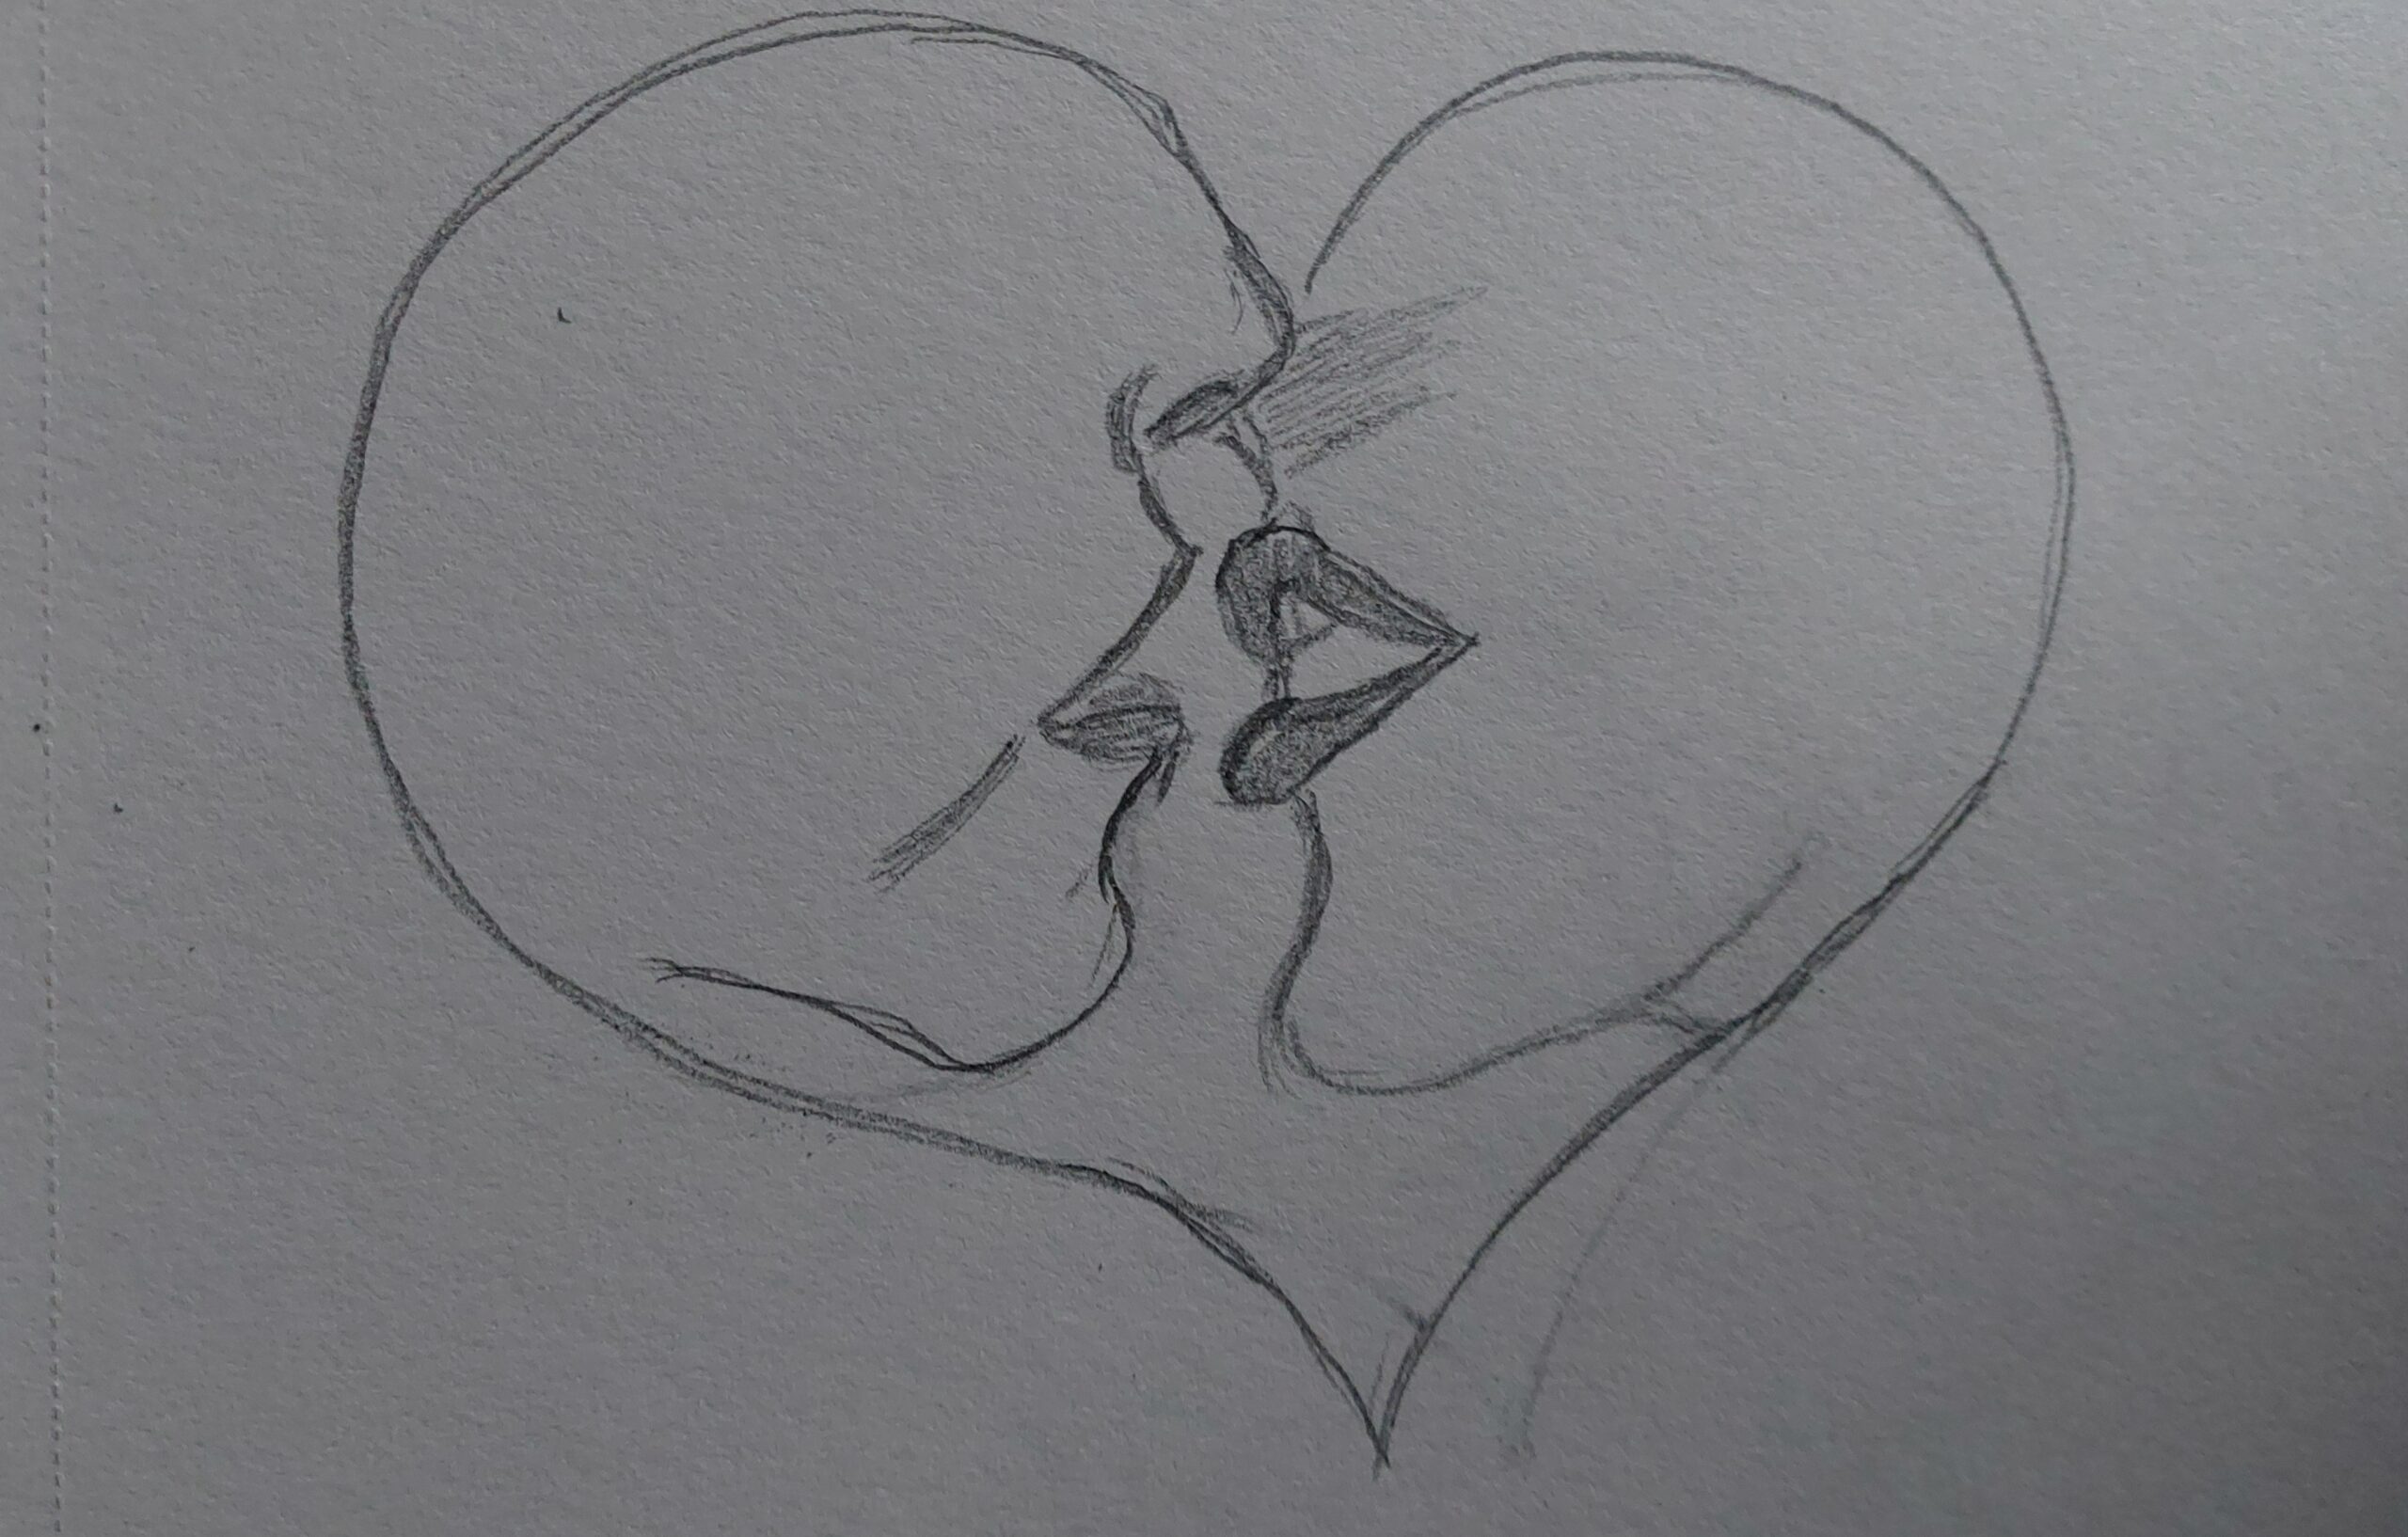 Zwei Gesichtsausschnitte auf dem Weg zum Kuss in einem Herz